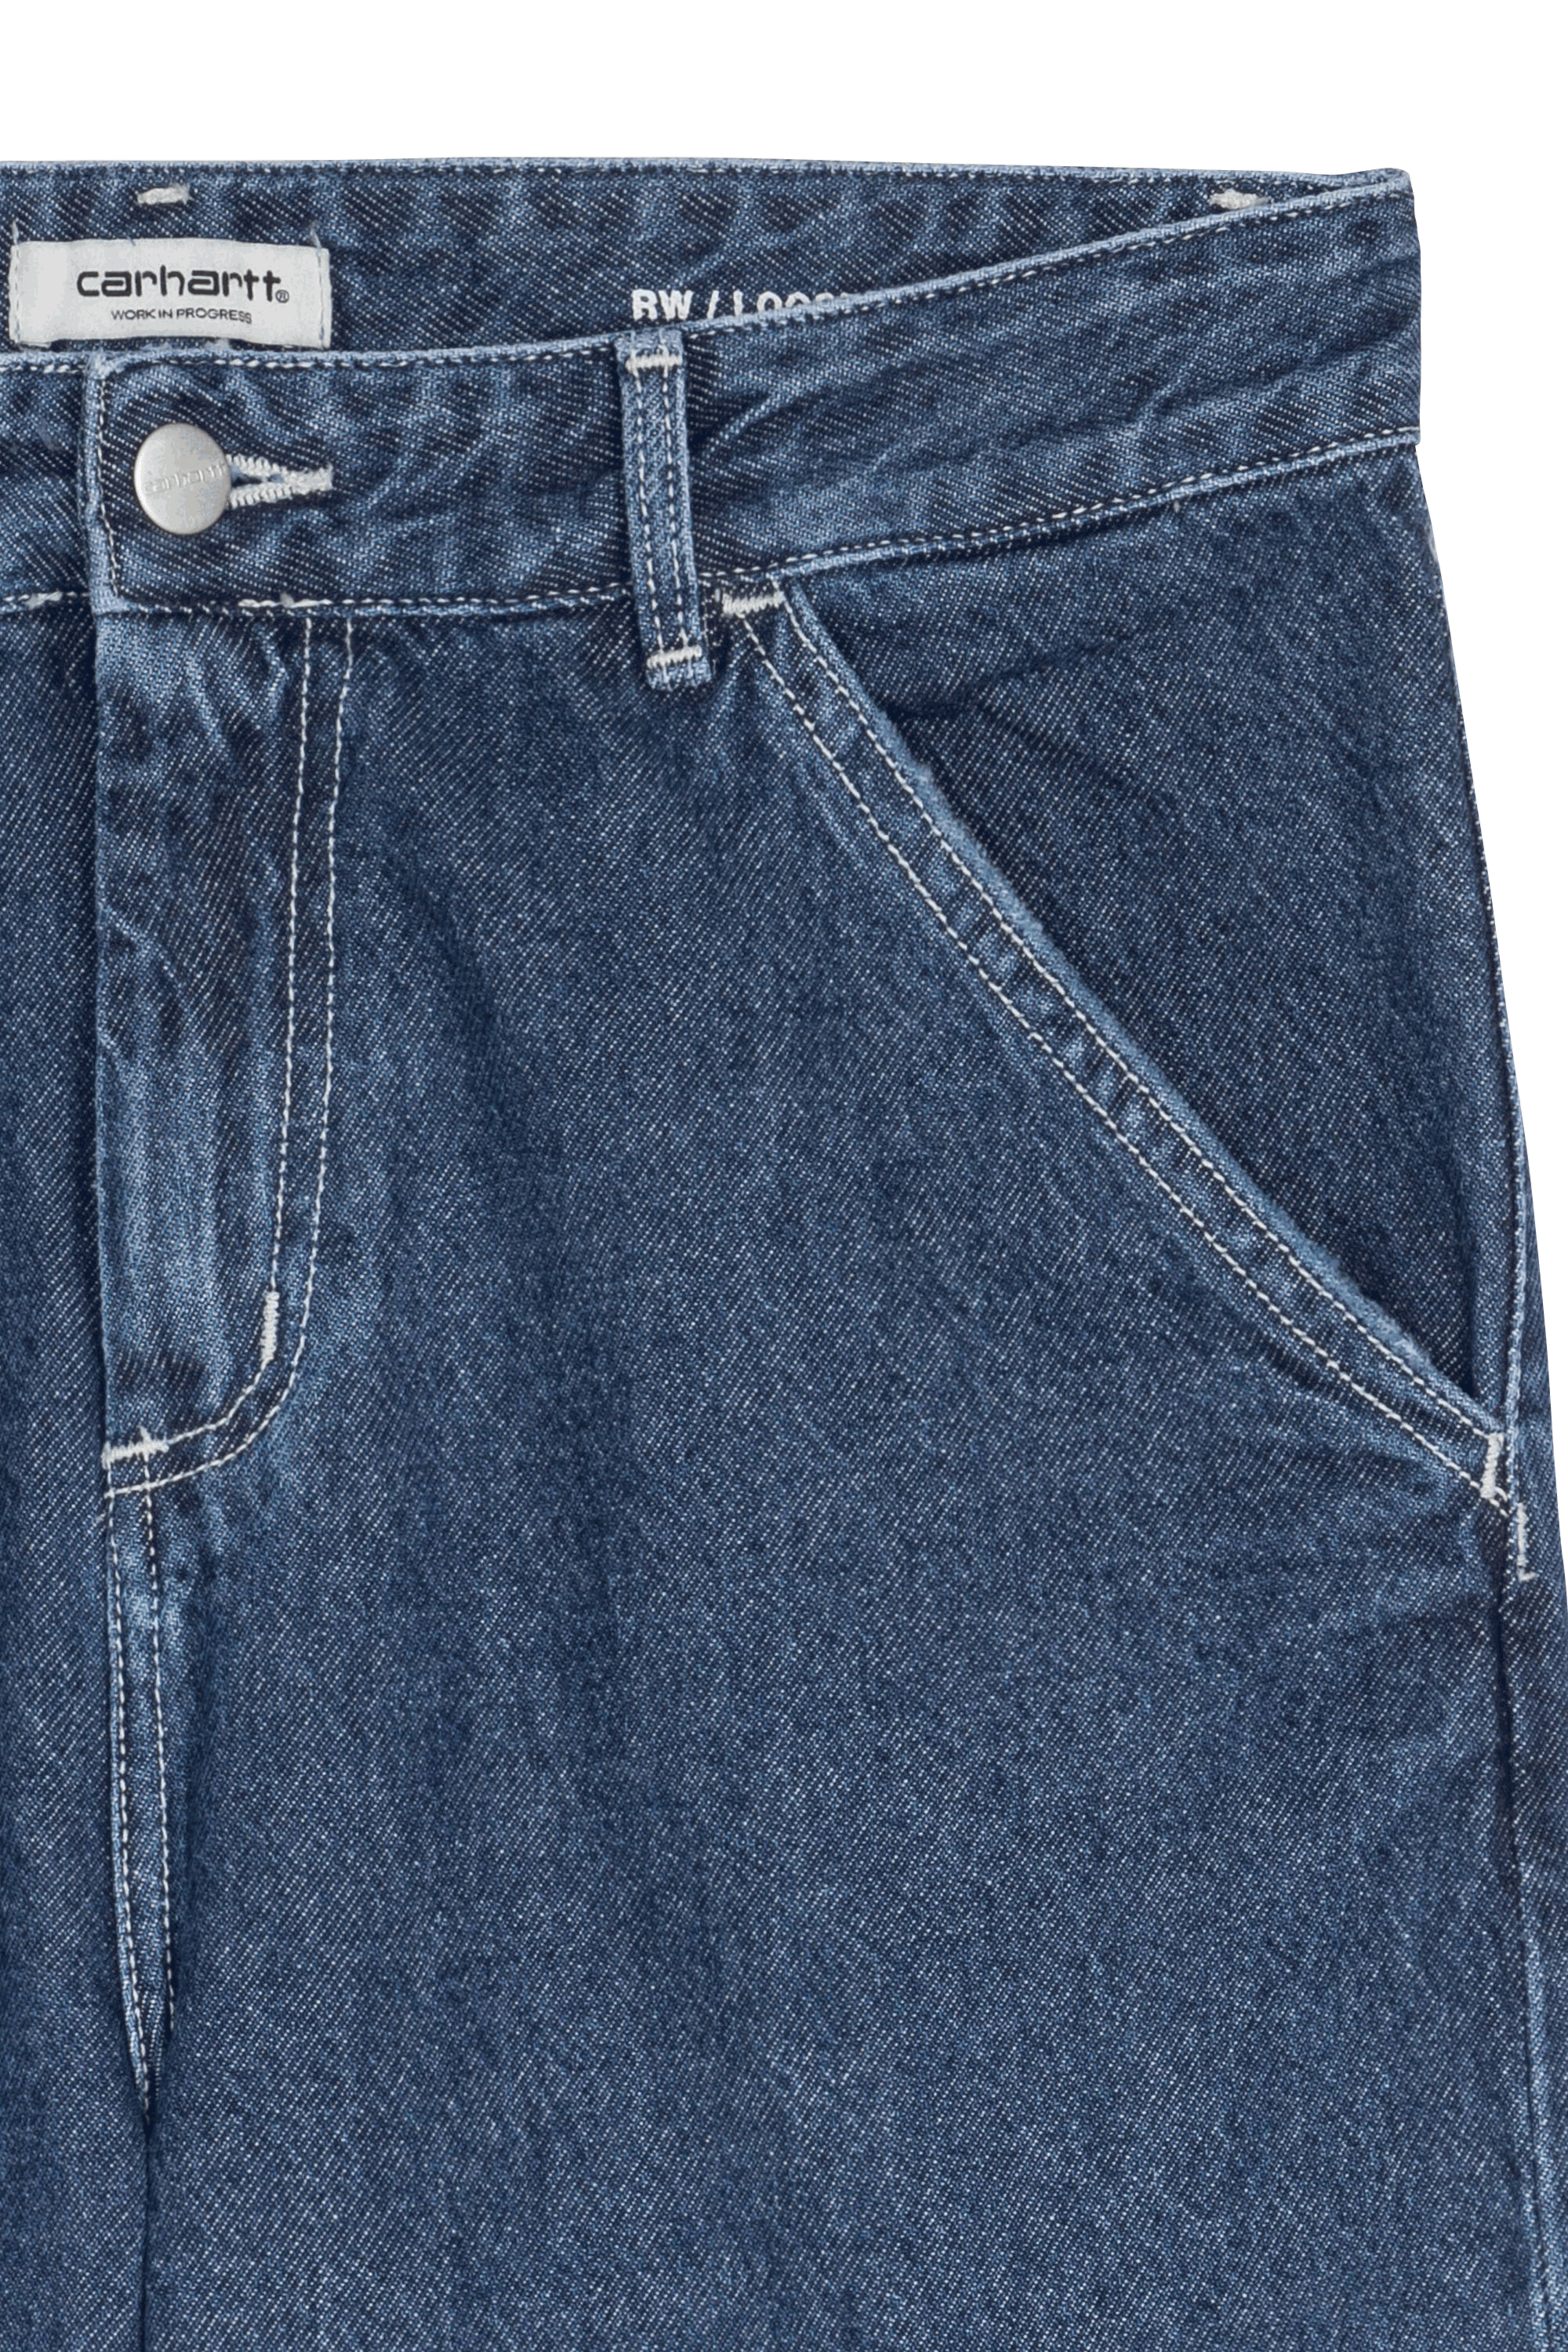 Pantalon en jean Jean Carhartt en coloris Bleu Femme Vêtements Jeans Pantalons capri et pantacourts 